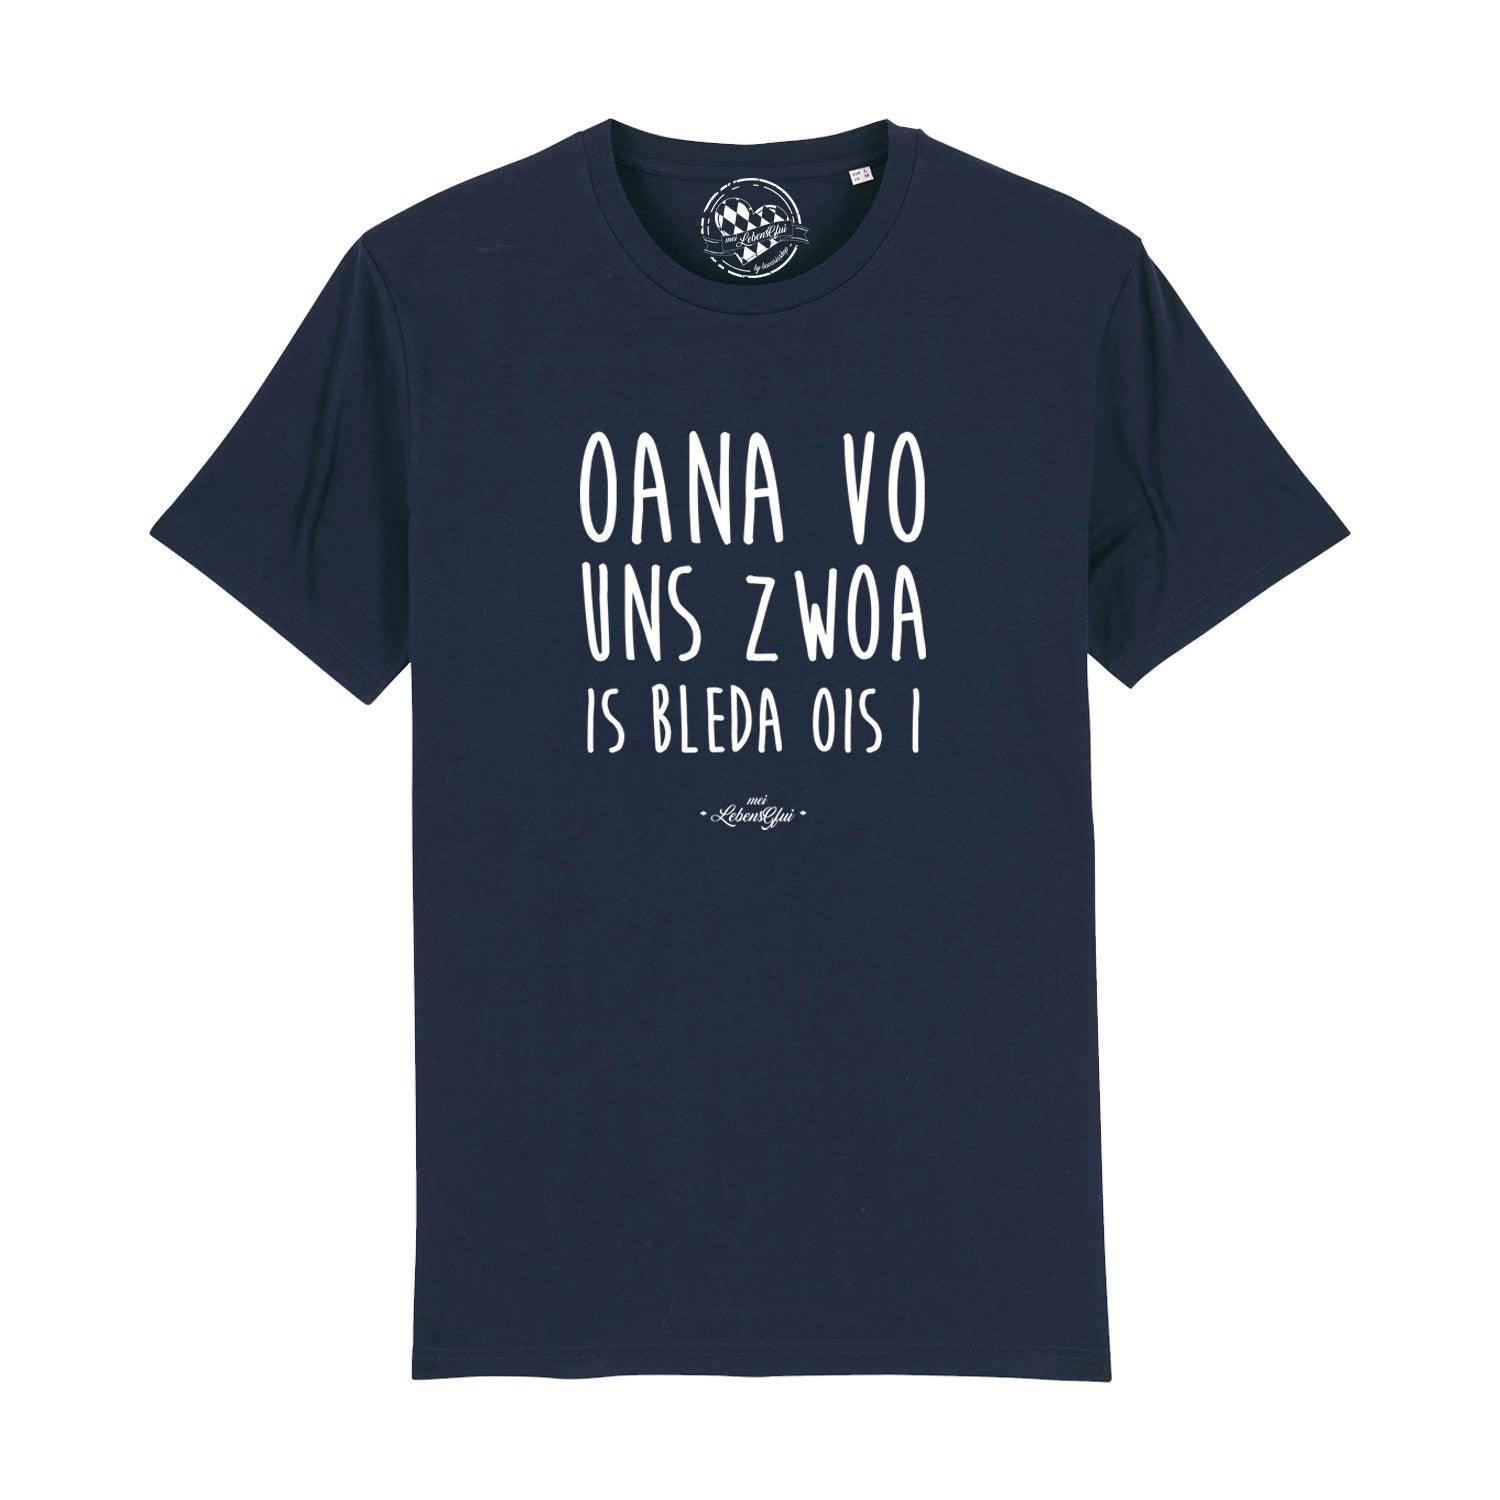 Herren T-Shirt Oana vo uns zwoa • ®mei LebensGfui kaufen